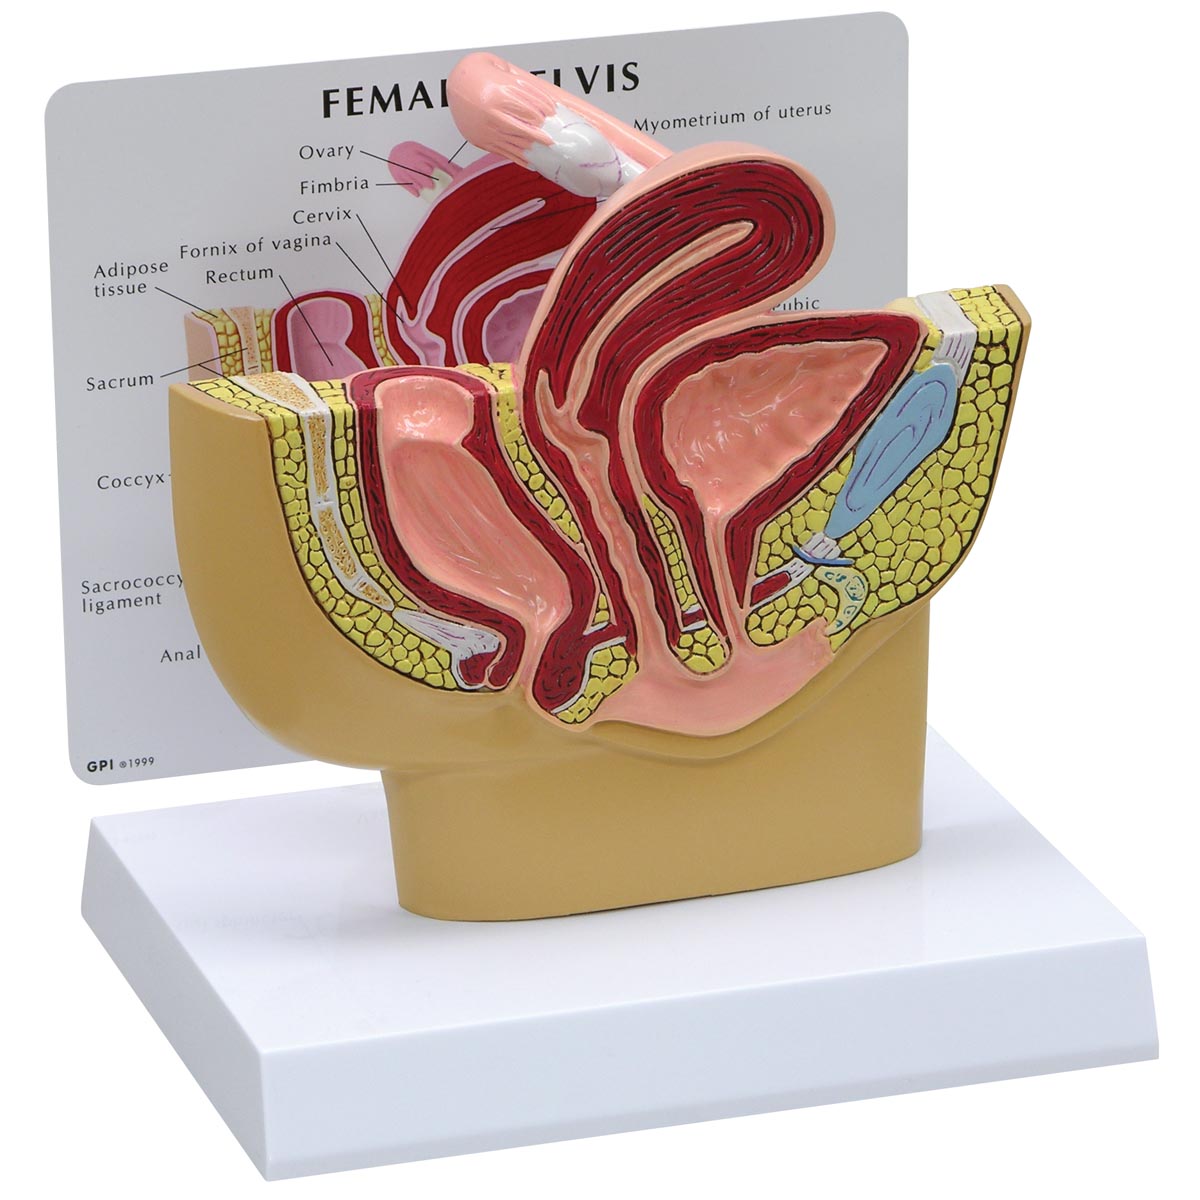 Modell eines weiblichen Beckens, Bestellnummer 1019561, 3500, GPI Anatomicals